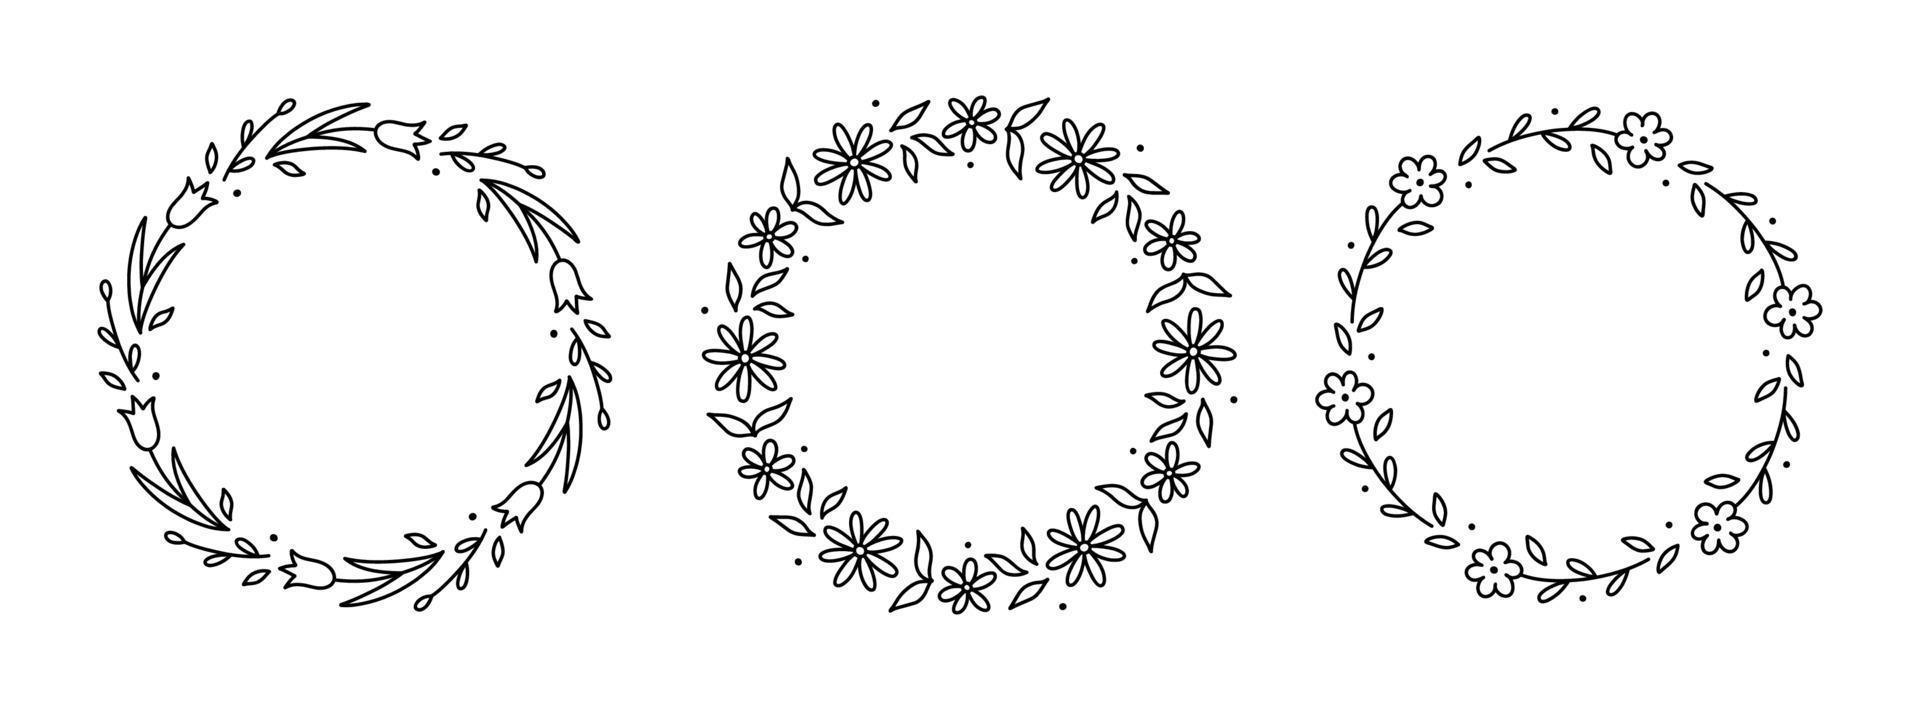 Reihe von Frühlingsblumenkränzen isoliert auf weißem Hintergrund. florale runde rahmen. handgezeichnete Vektorgrafik im Doodle-Stil. Perfekt für Karten, Einladungen, Dekorationen, Logos, verschiedene Designs. vektor